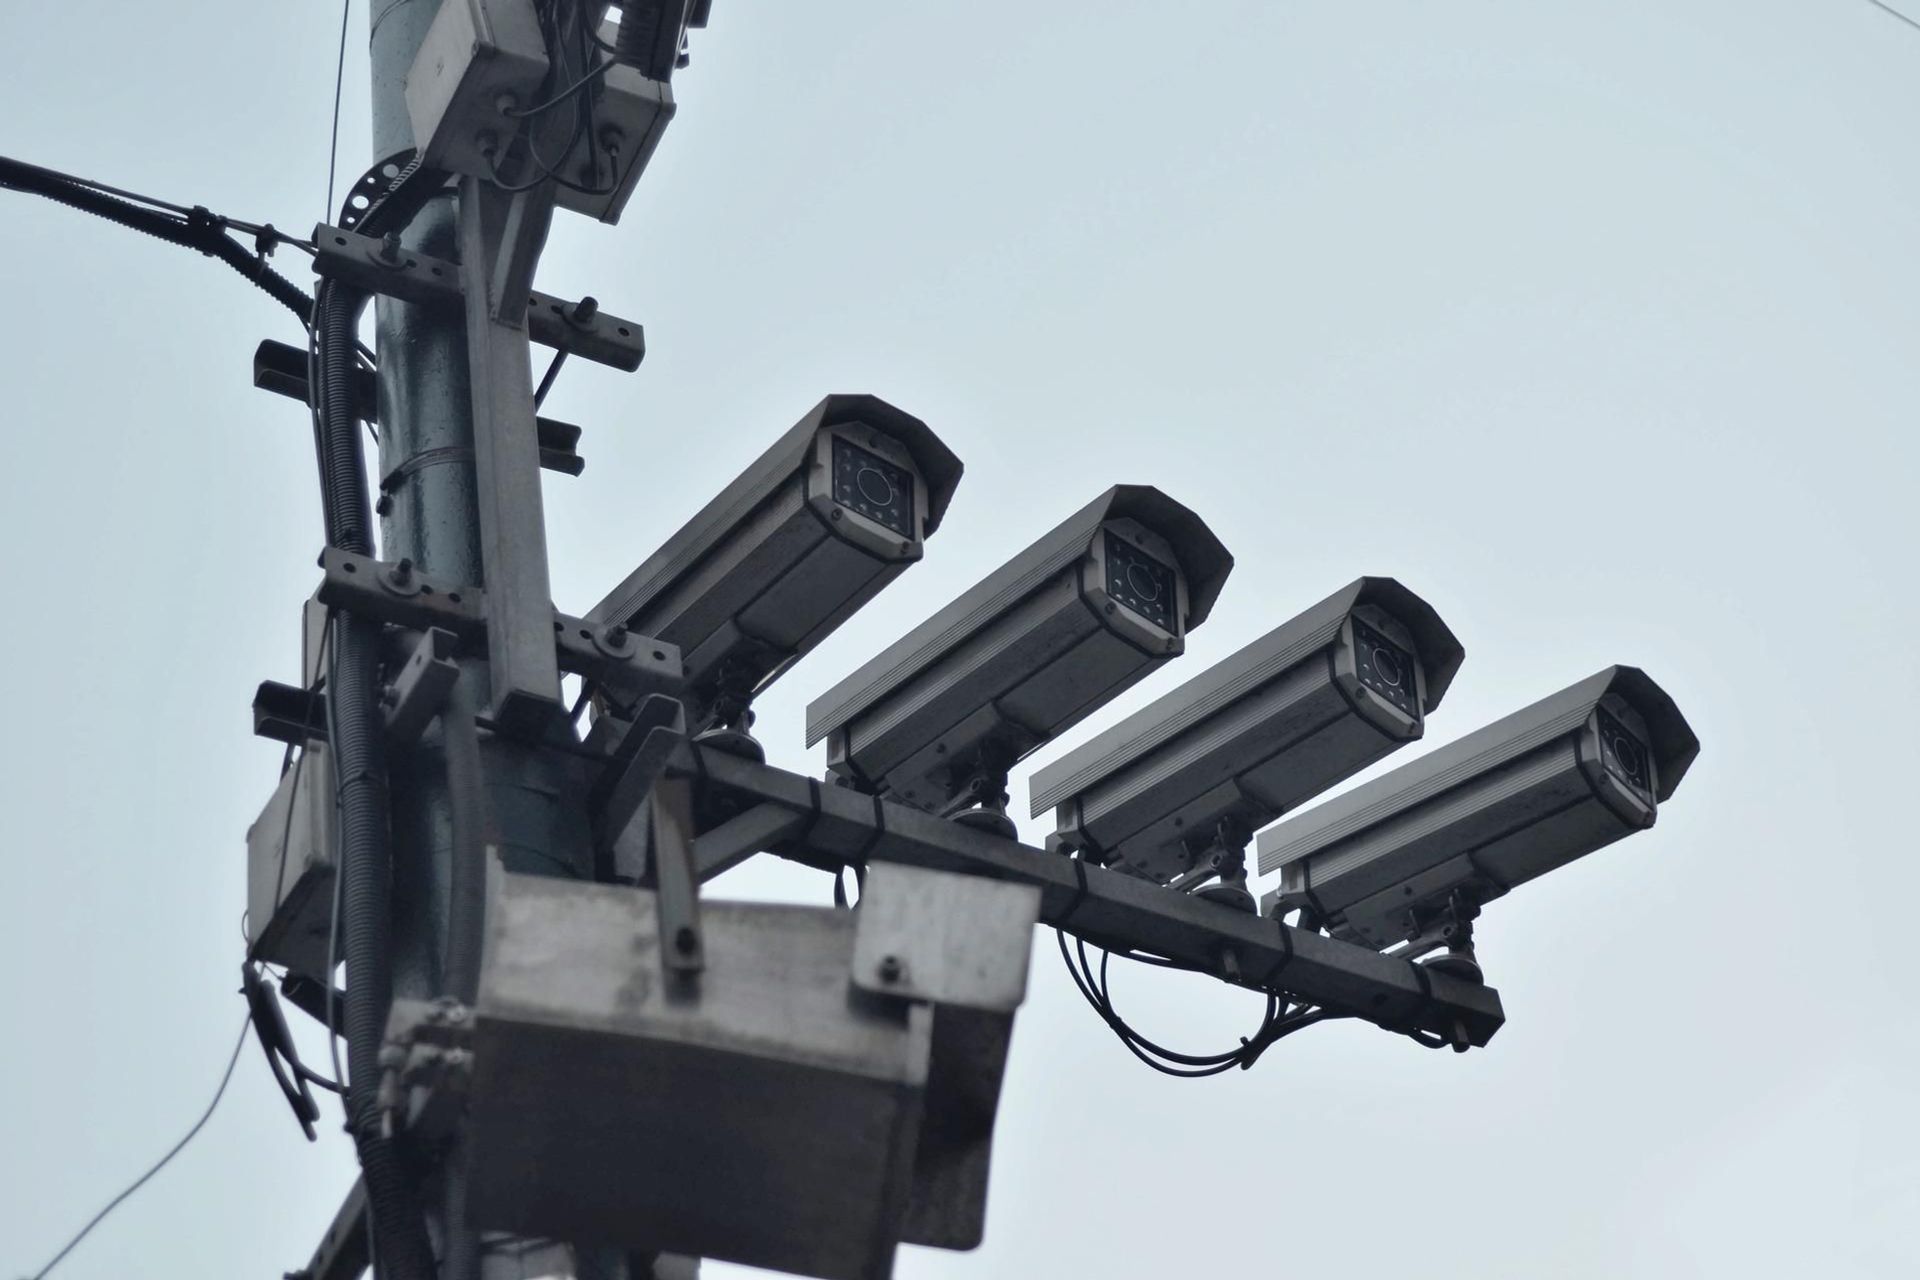 Las cámaras de la calle y algunas casas particulares pueden comprometer la privacidad de las personas